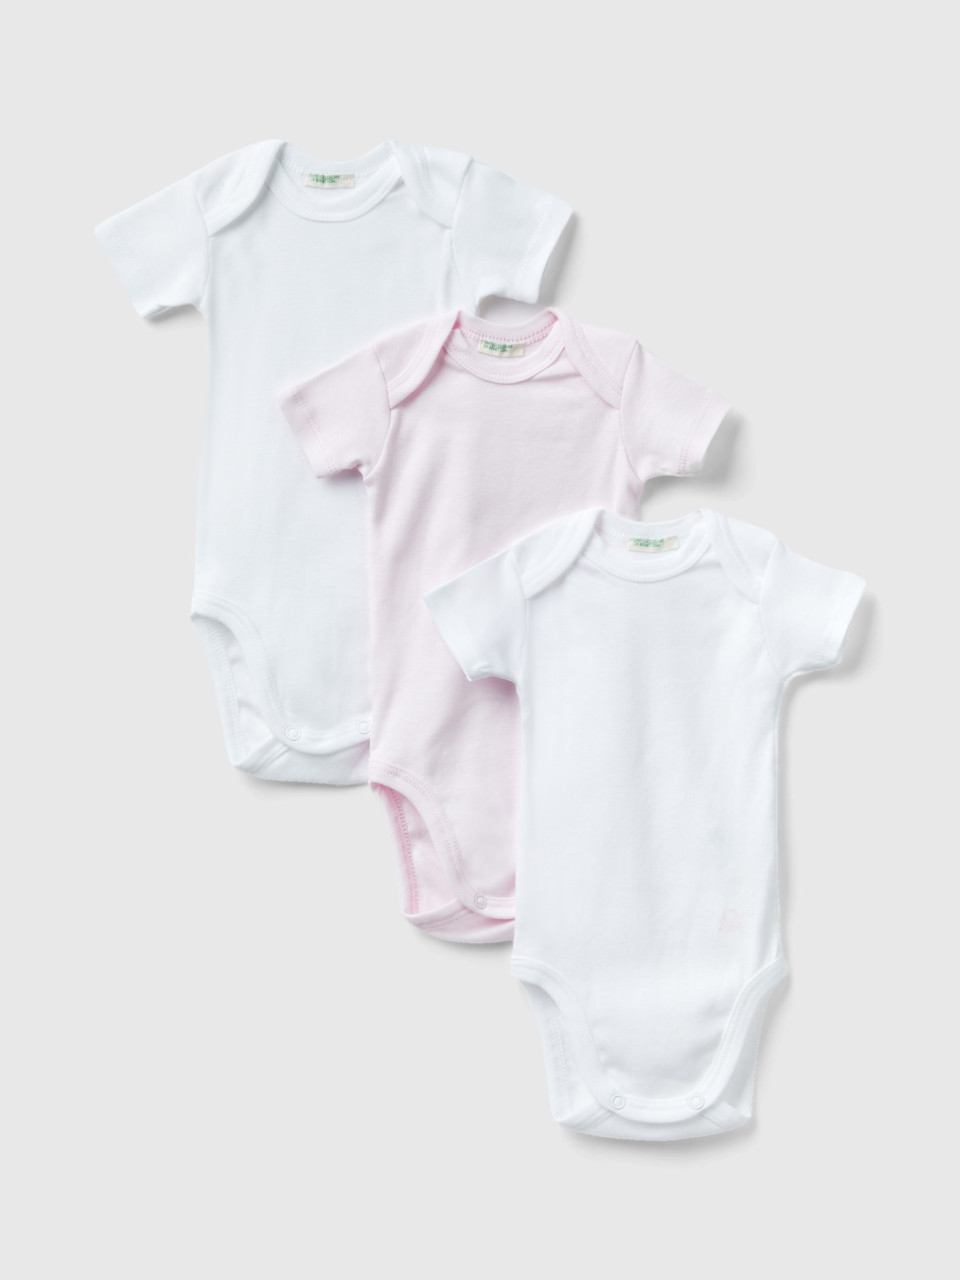 Benetton, Organic Cotton Solid Color Bodysuit Set, Multi-color, Kids